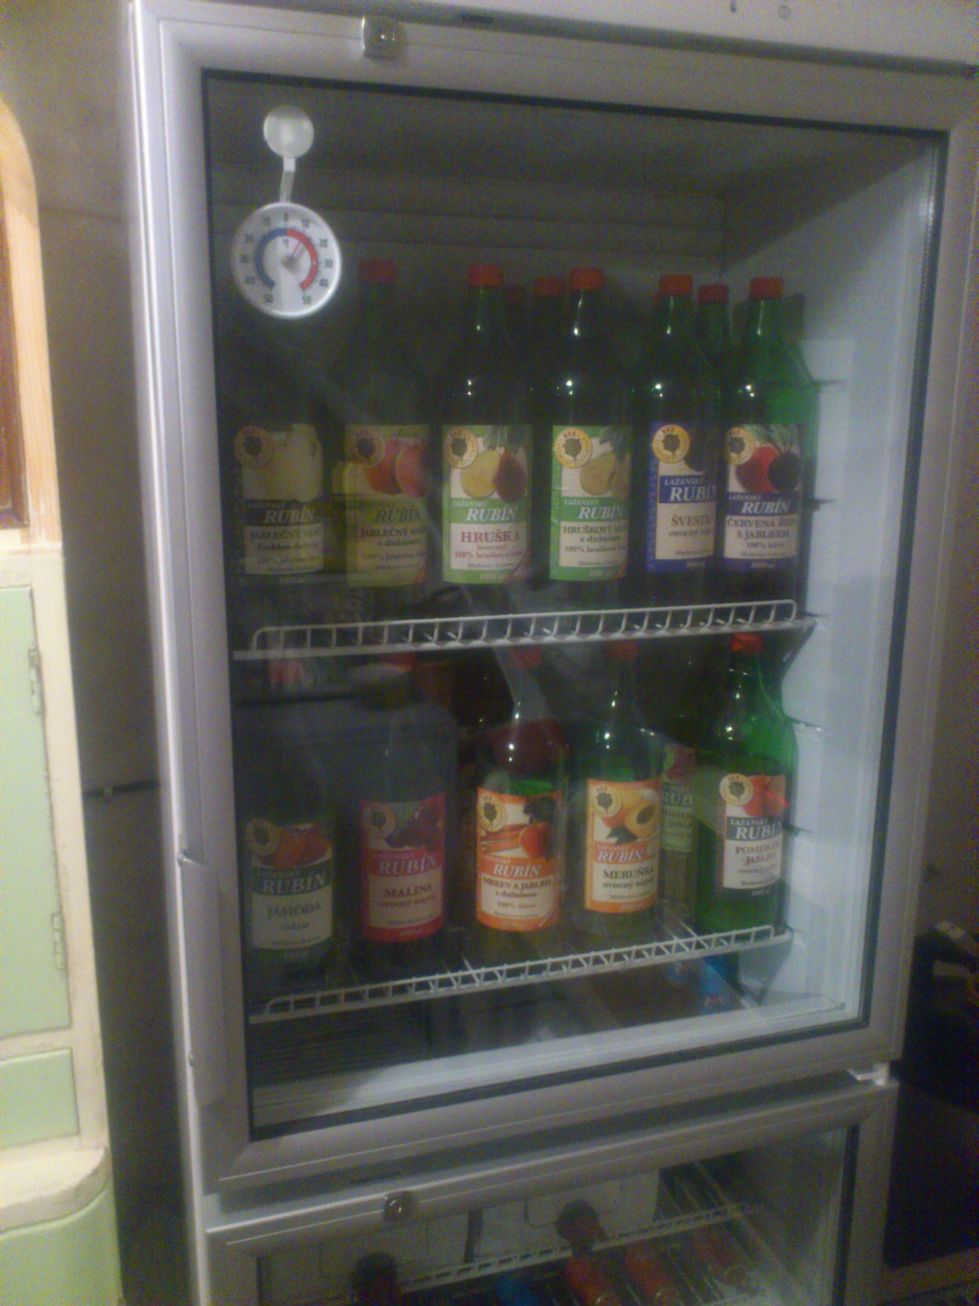 A tady je naše první lednice - dnes zde skladujeme mošty a lahvové pivo